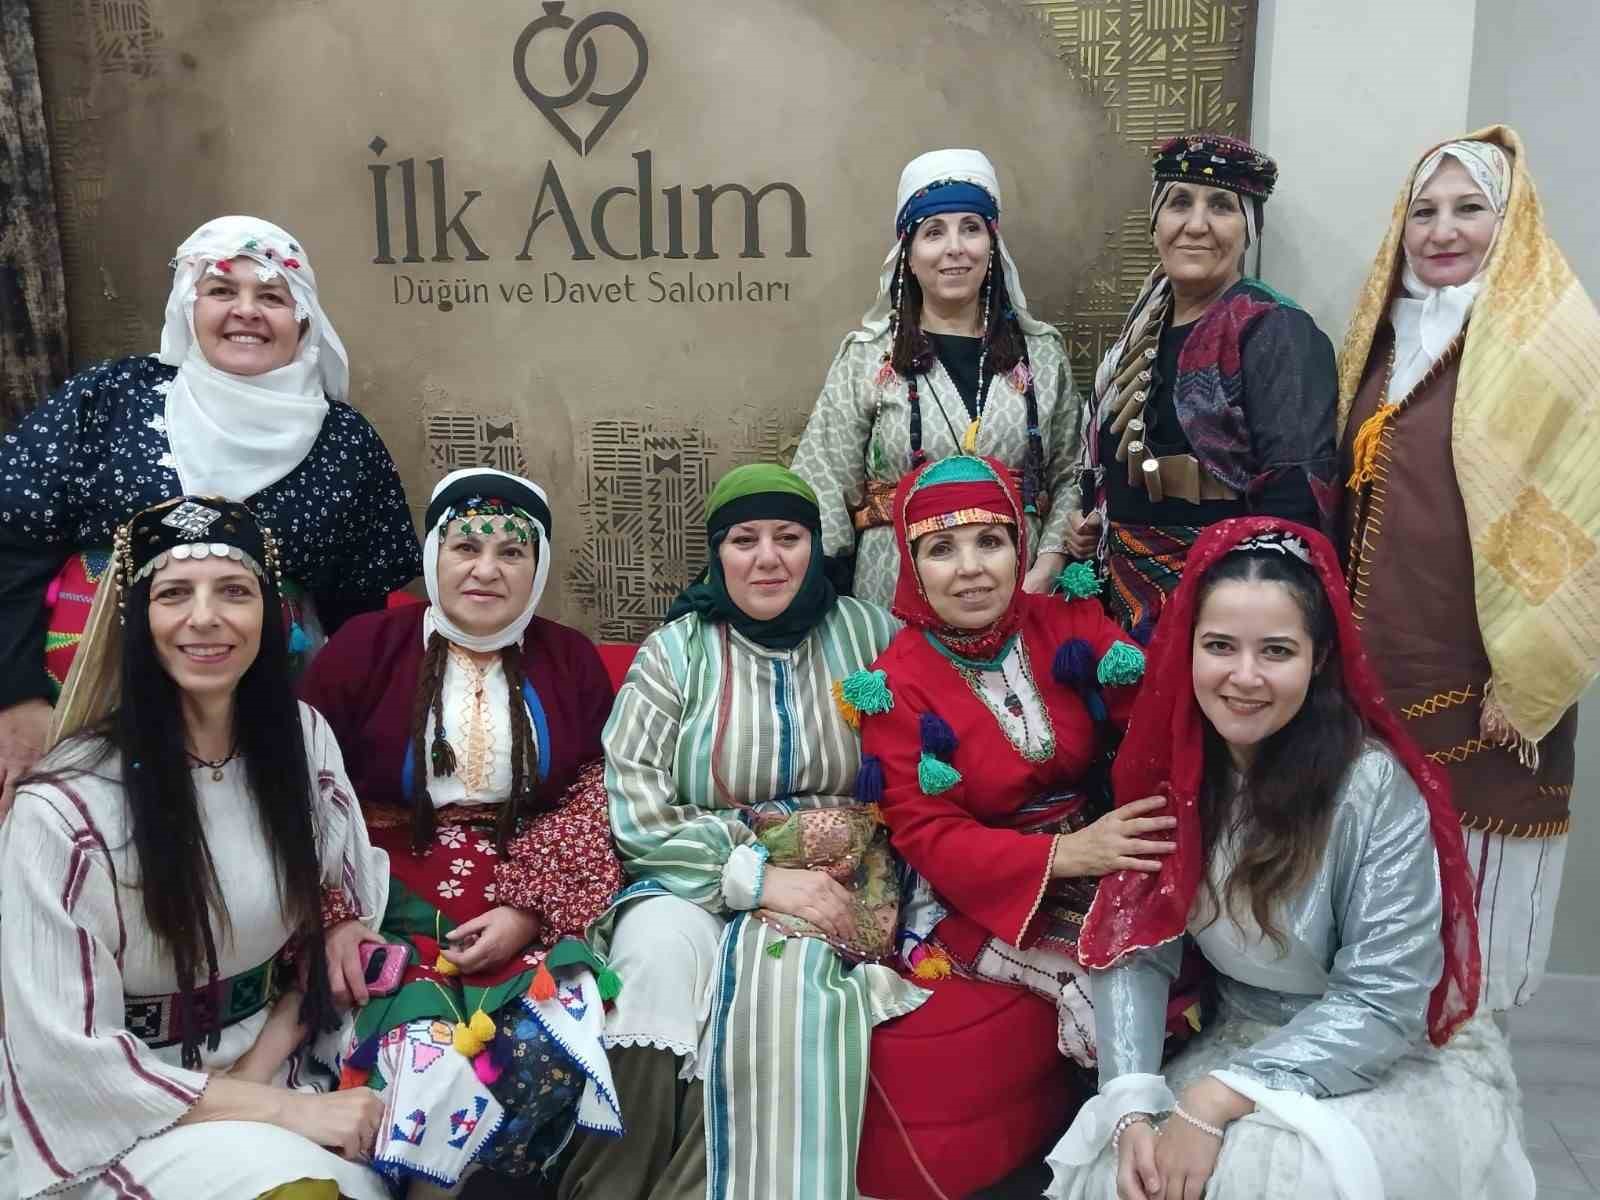 ‘Millî Mücadele’nin Kahraman Kadınları’ tarihsel drama gösterisi Eskişehir’de ilgi gördü